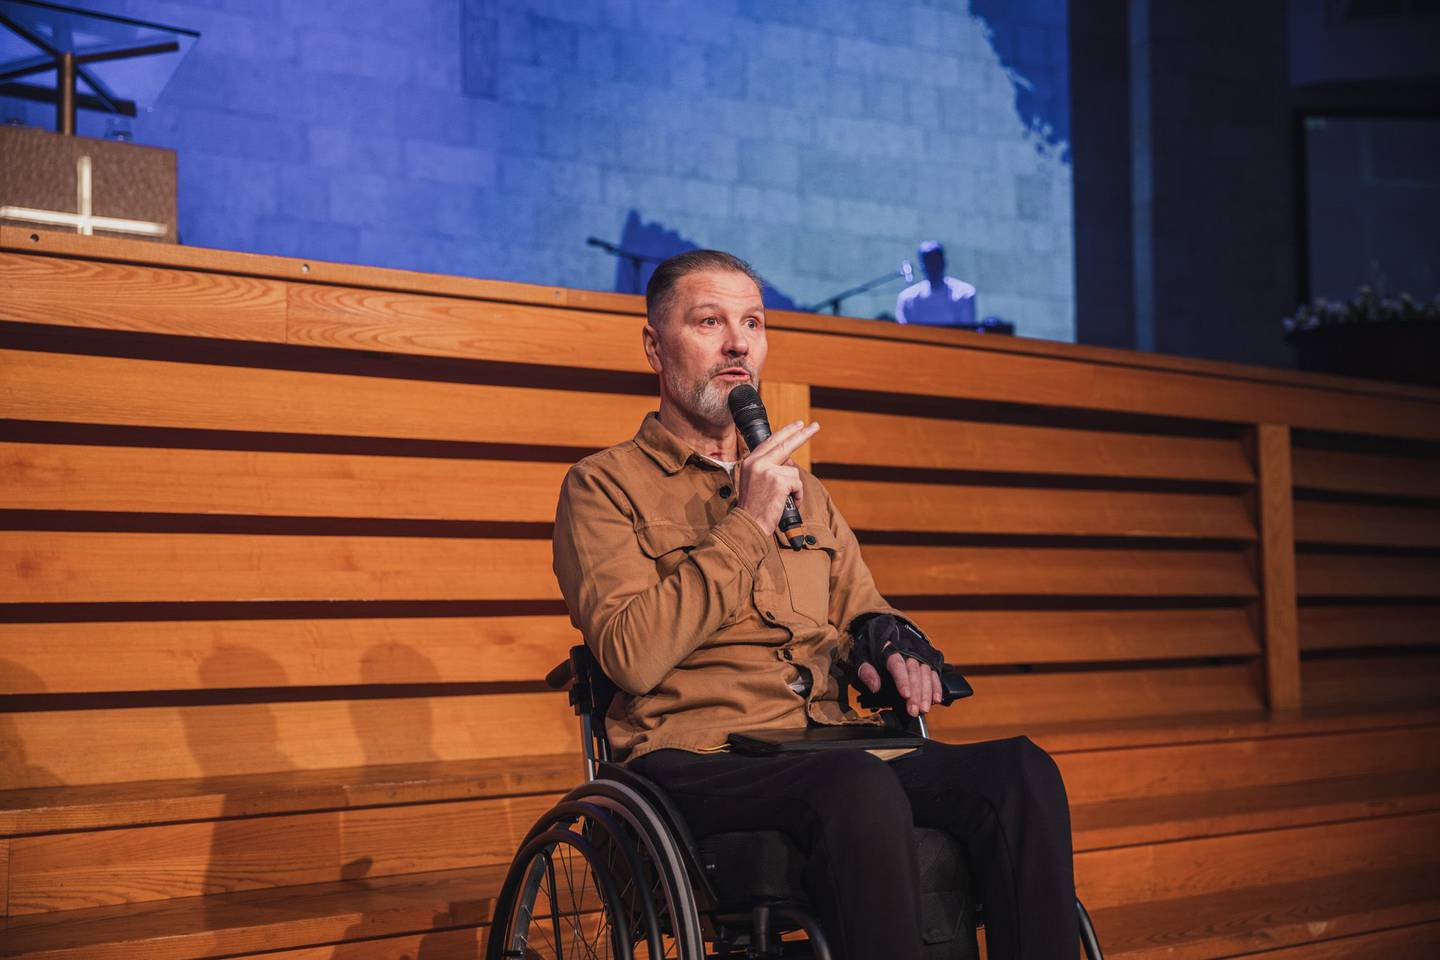 RULLESTOL: Jan Blom sitter fortsatt i rullestol. Fra den fortalte han om ulykken, og kjærligheten han har følt fra menigheten og Gud i etterkant.